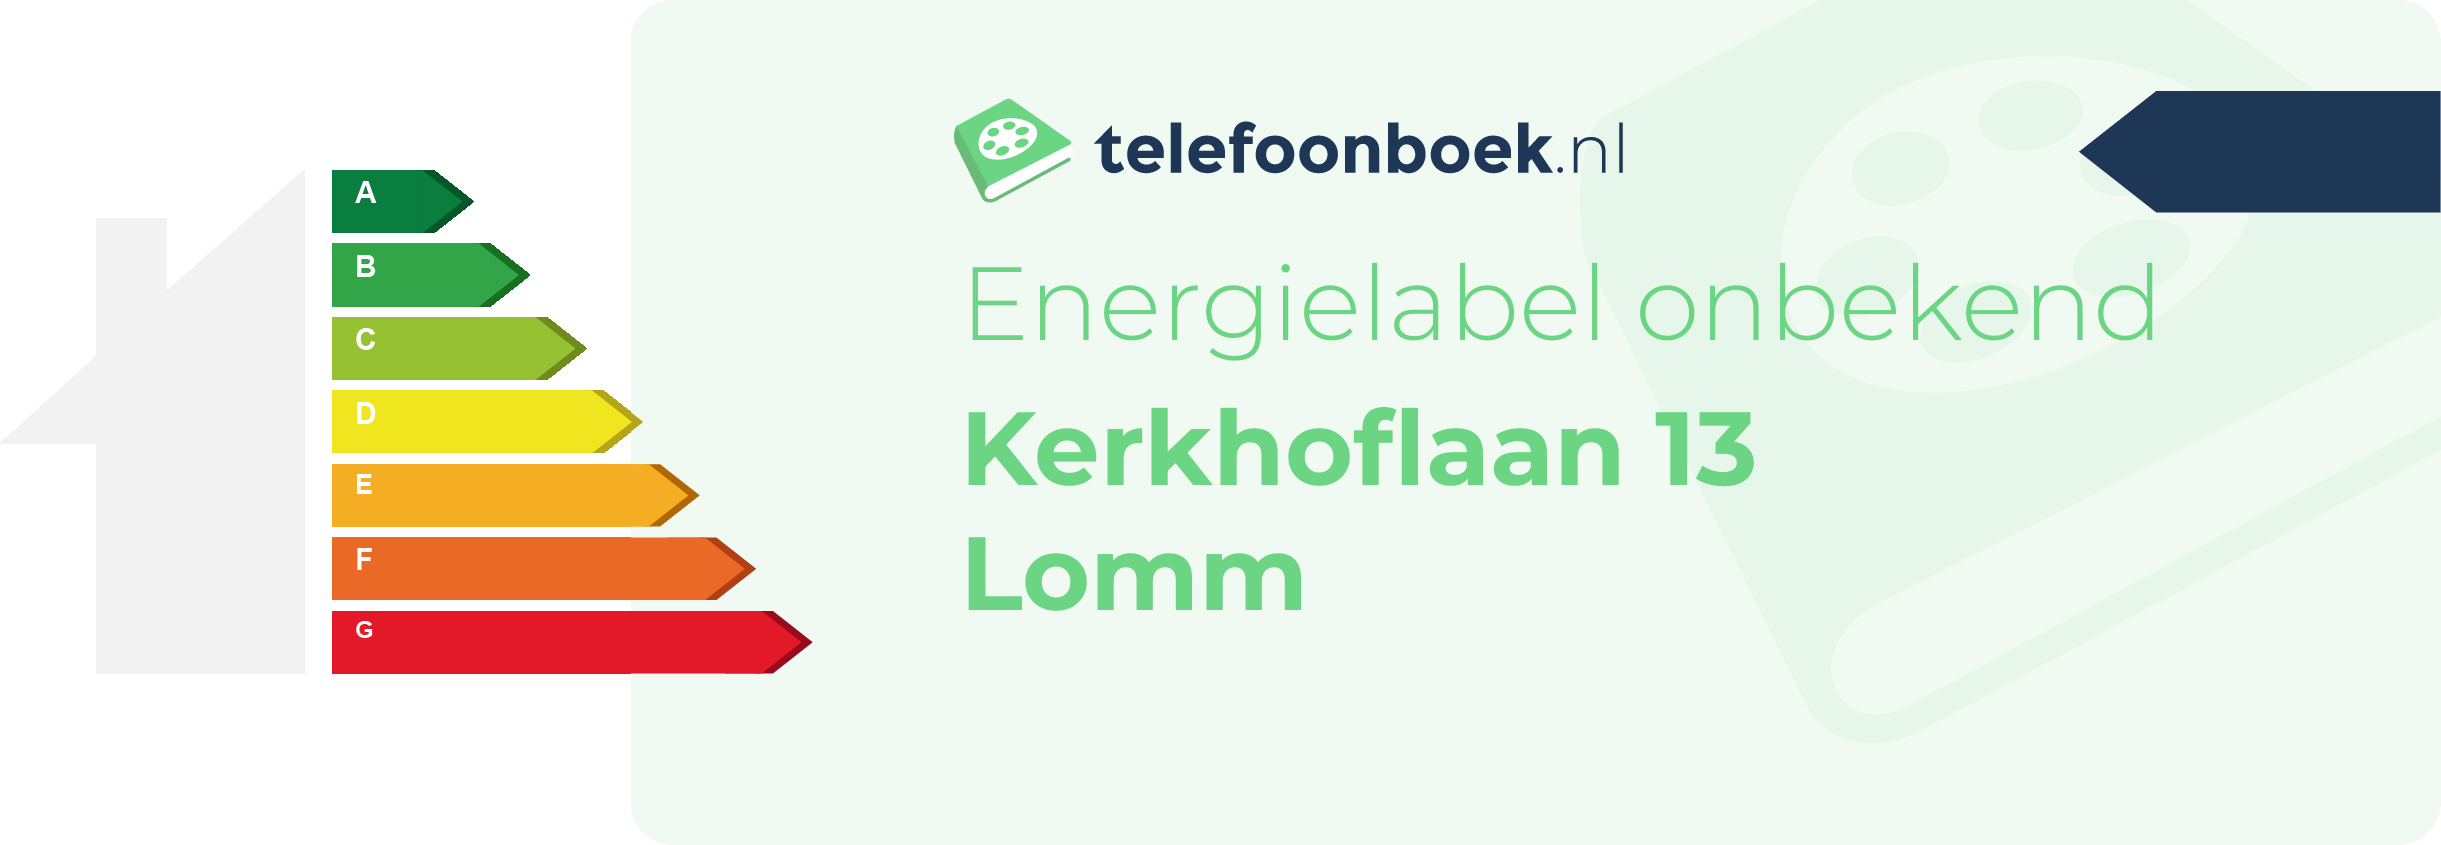 Energielabel Kerkhoflaan 13 Lomm